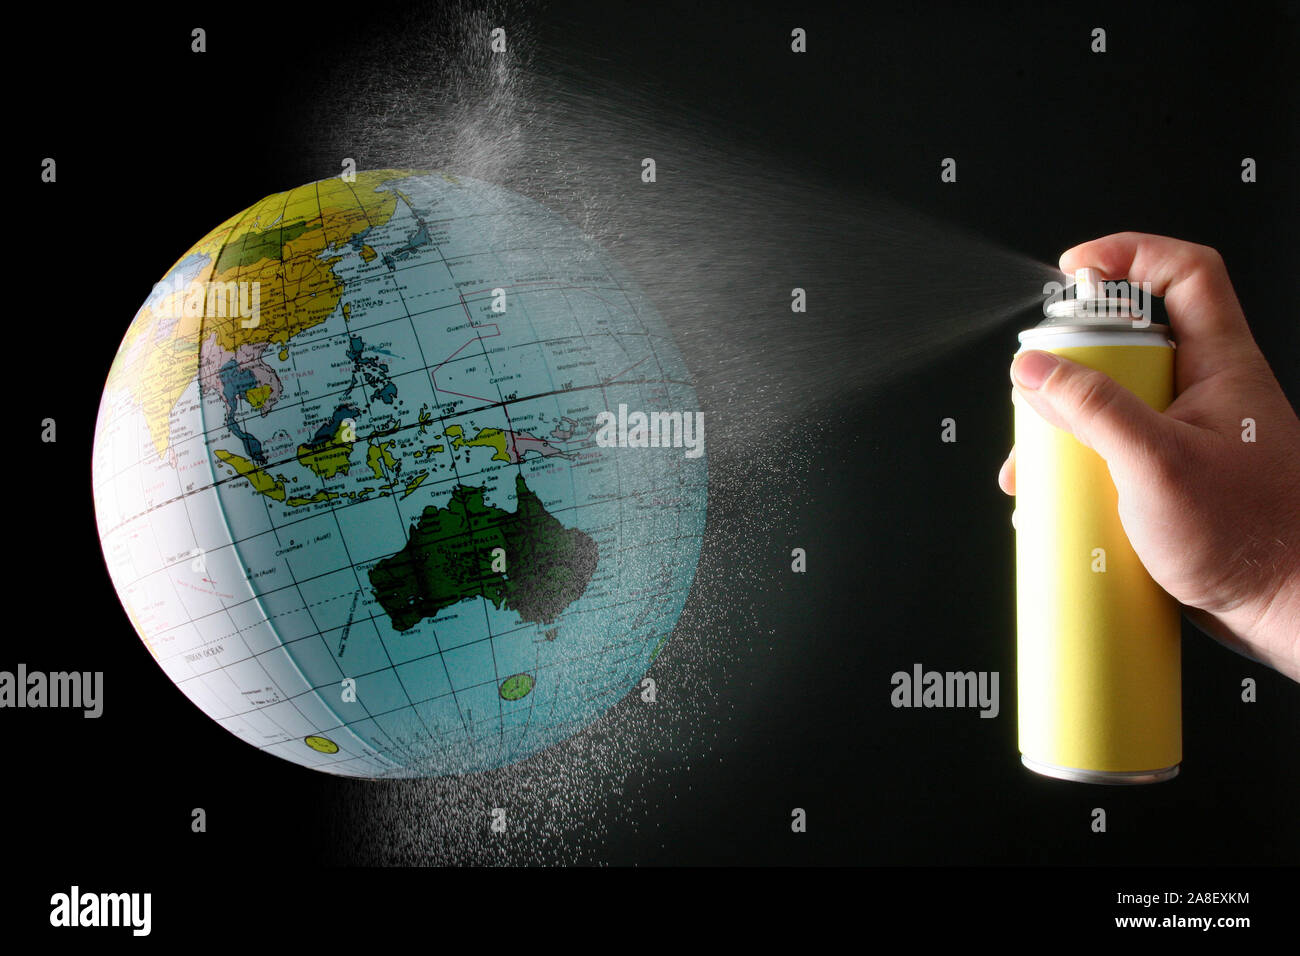 Globus und Spraydose, Erderwärmung, CO2 Ausstoss, Symbolbilder Ozonloch Klimawandel,,, Banque D'Images